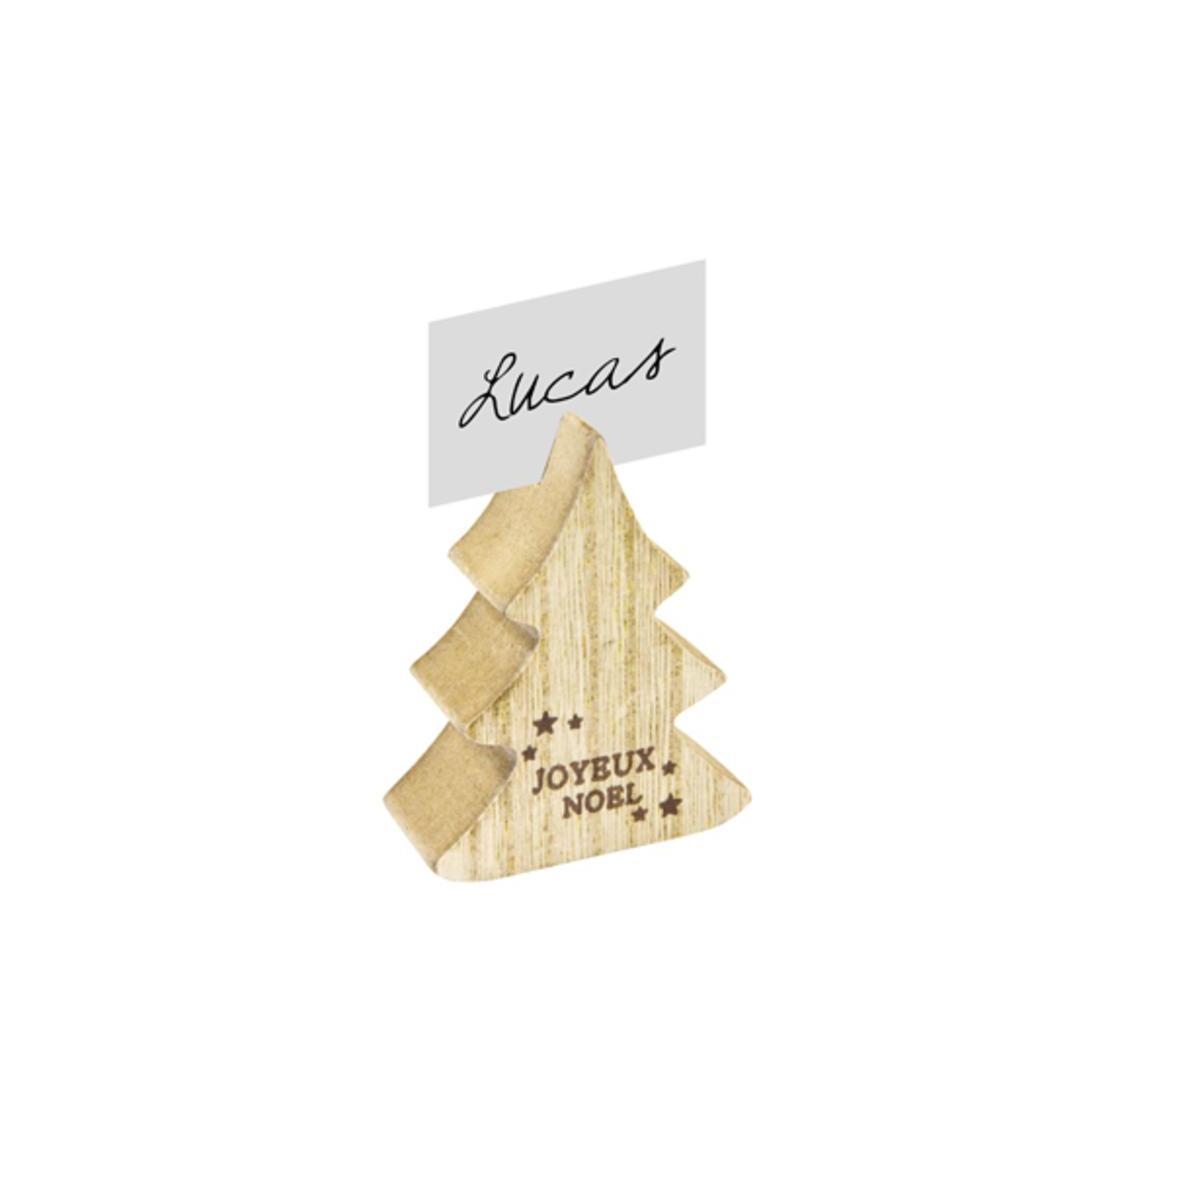 Sapin en bois ' Joyeux Noël ' marque-place - 5 x 6 x 2 cm - Beige